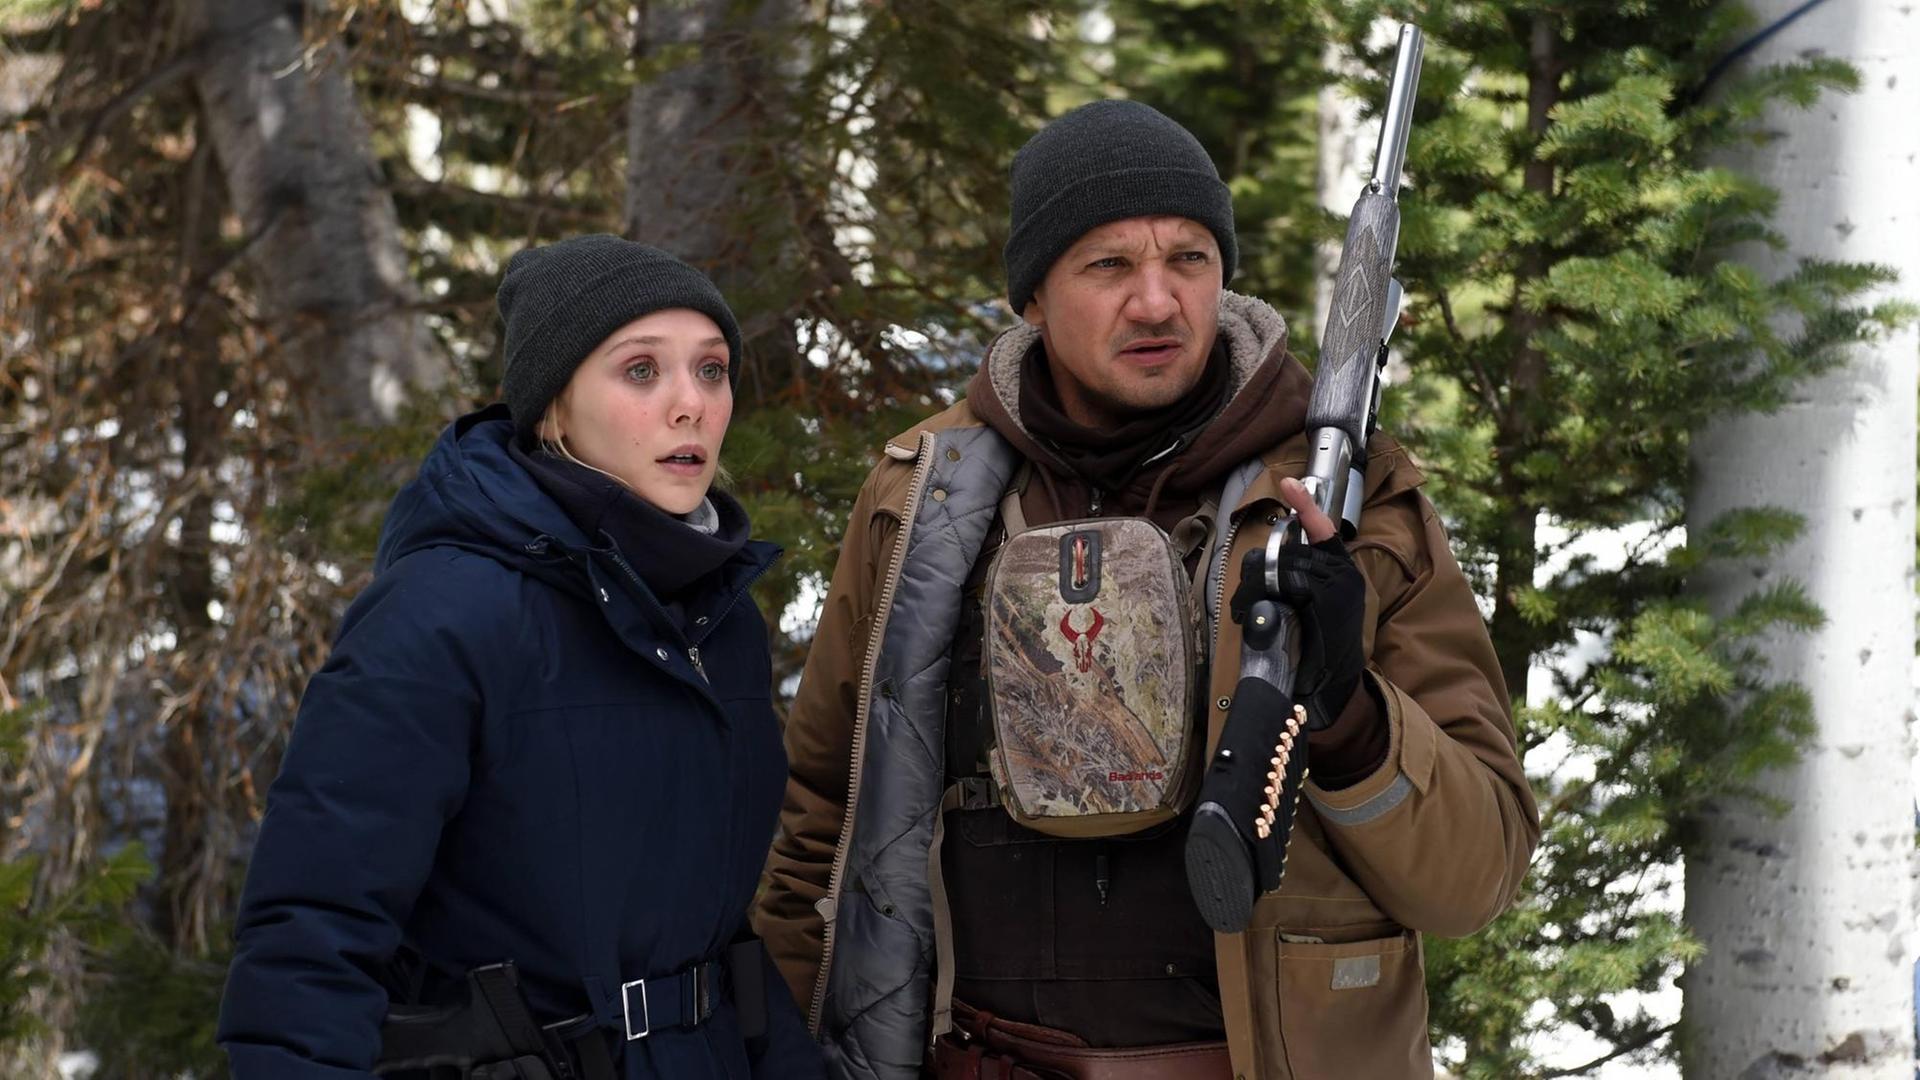 Szenenfoto aus "Wind River" mit Elizabeth Olsen als Jane Banner und Jeremy Renner als Cory Lambert